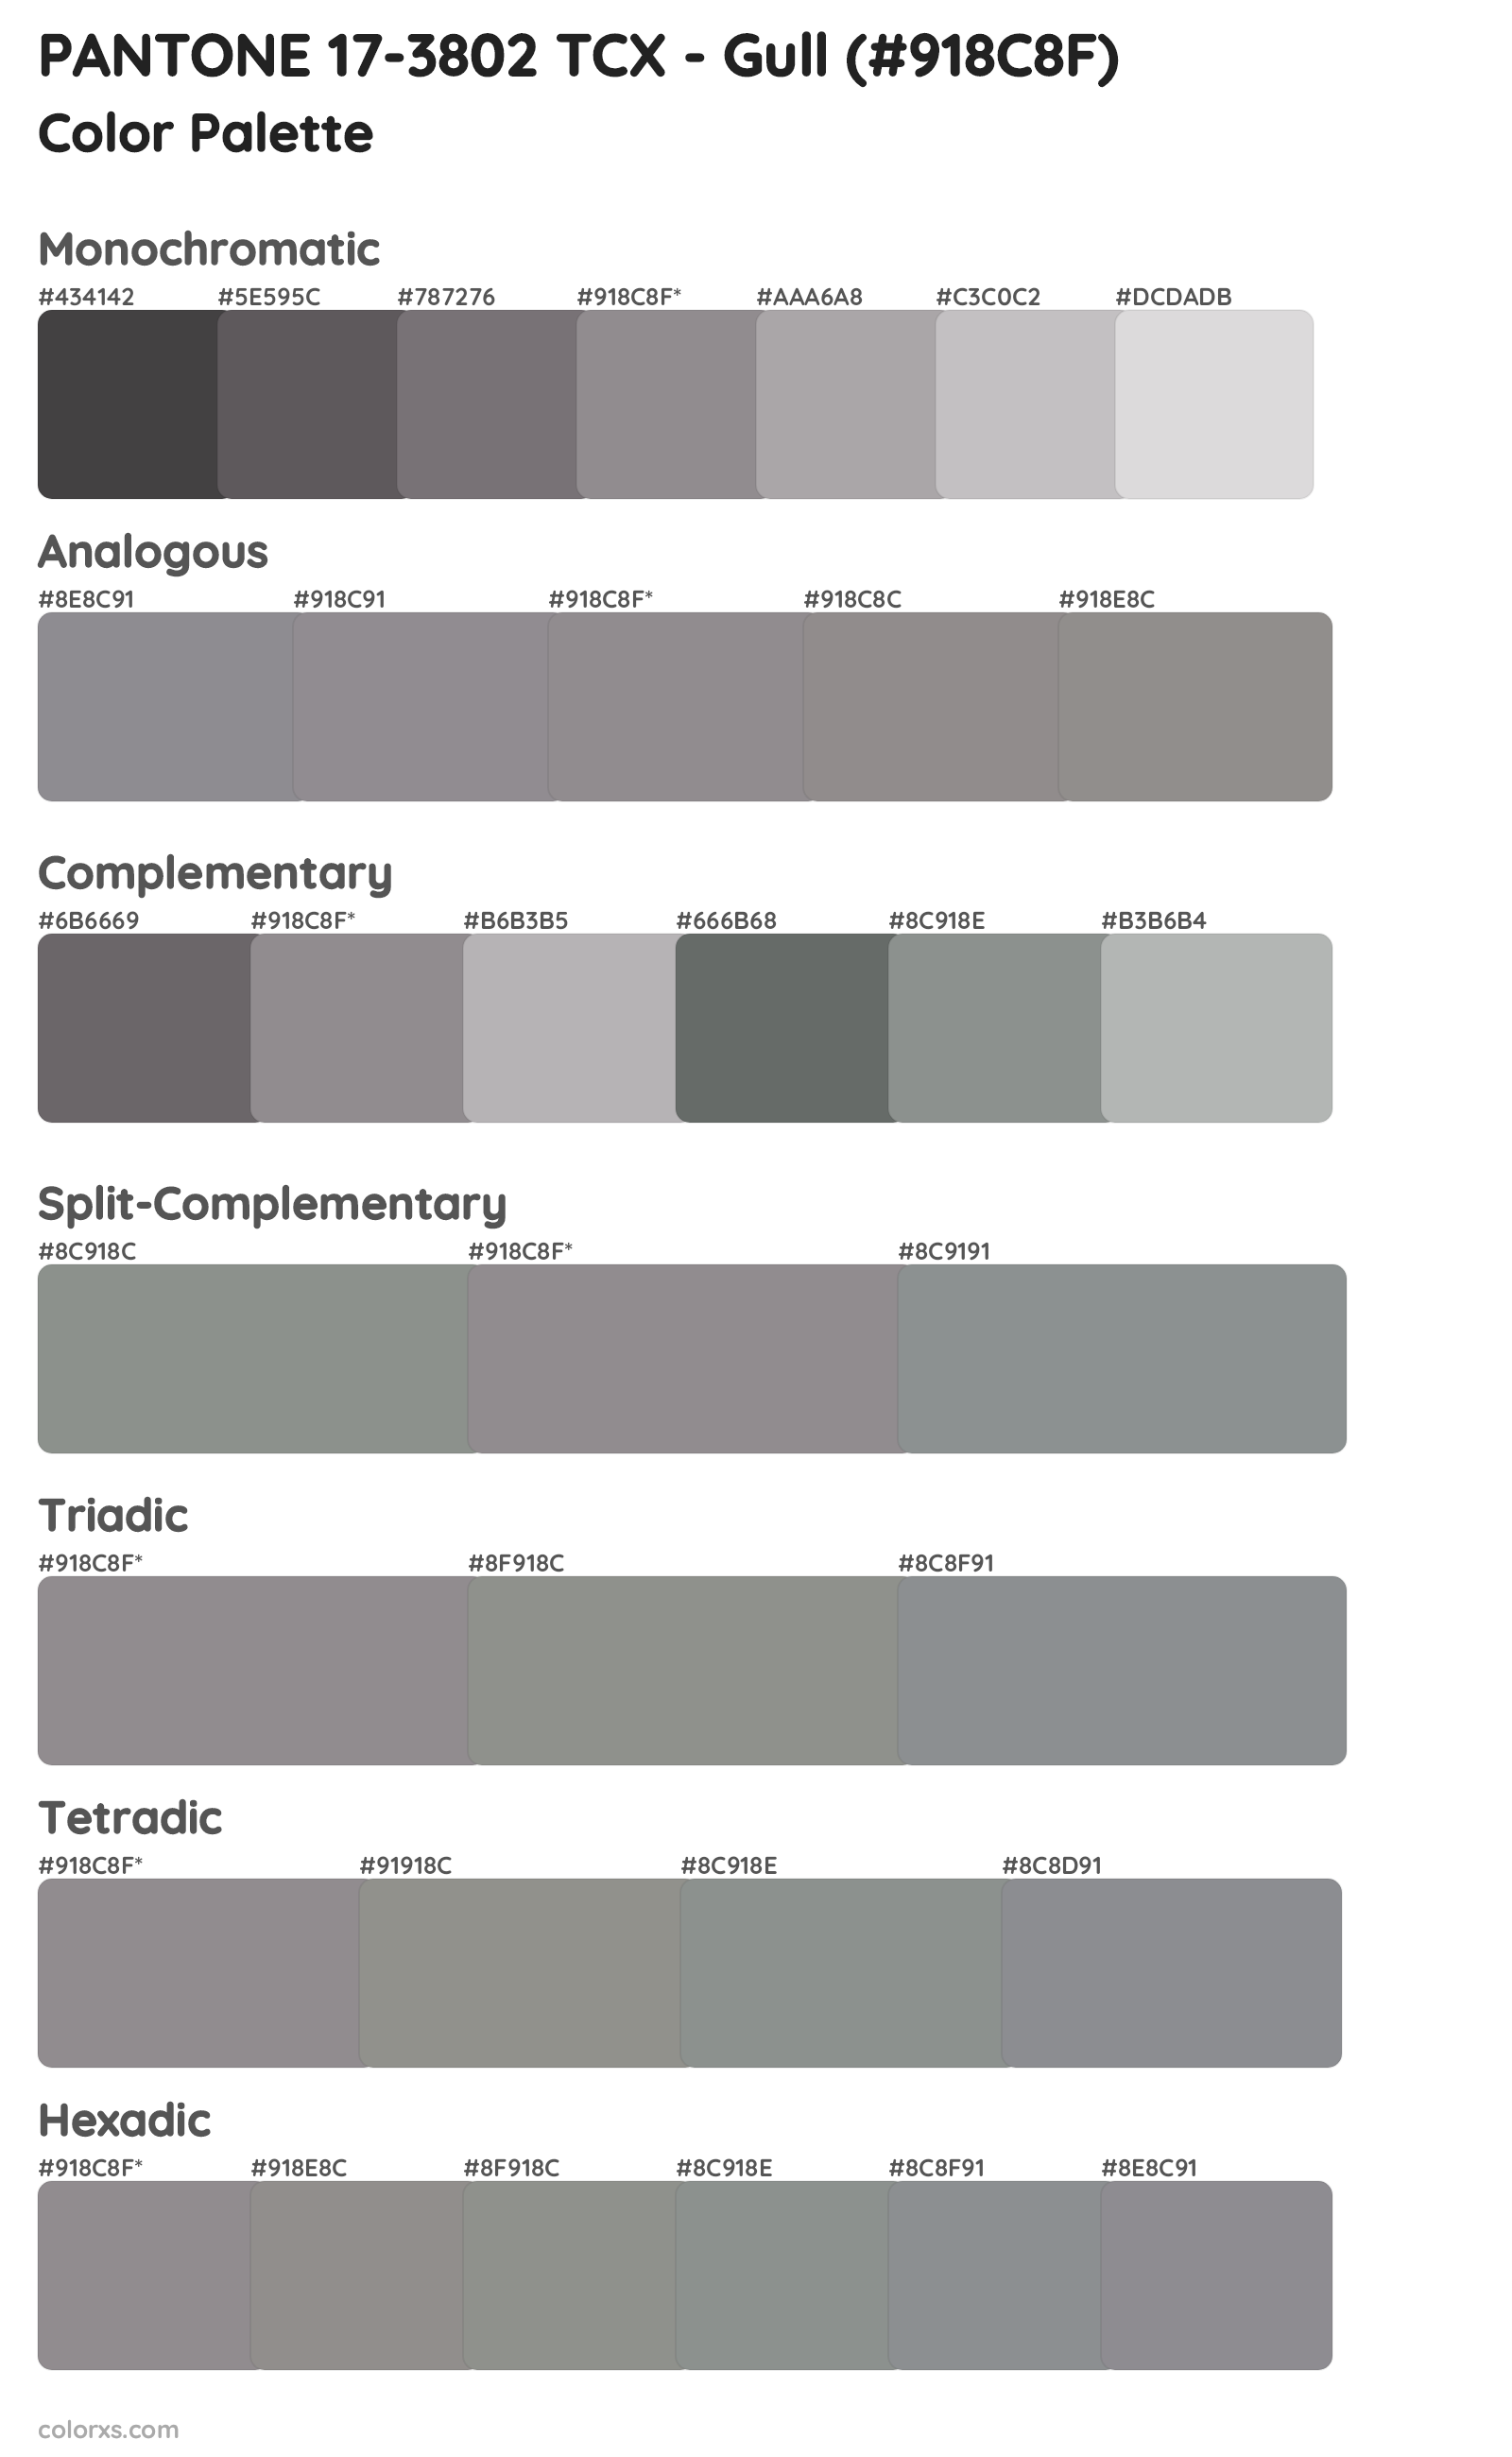 PANTONE 17-3802 TCX - Gull Color Scheme Palettes